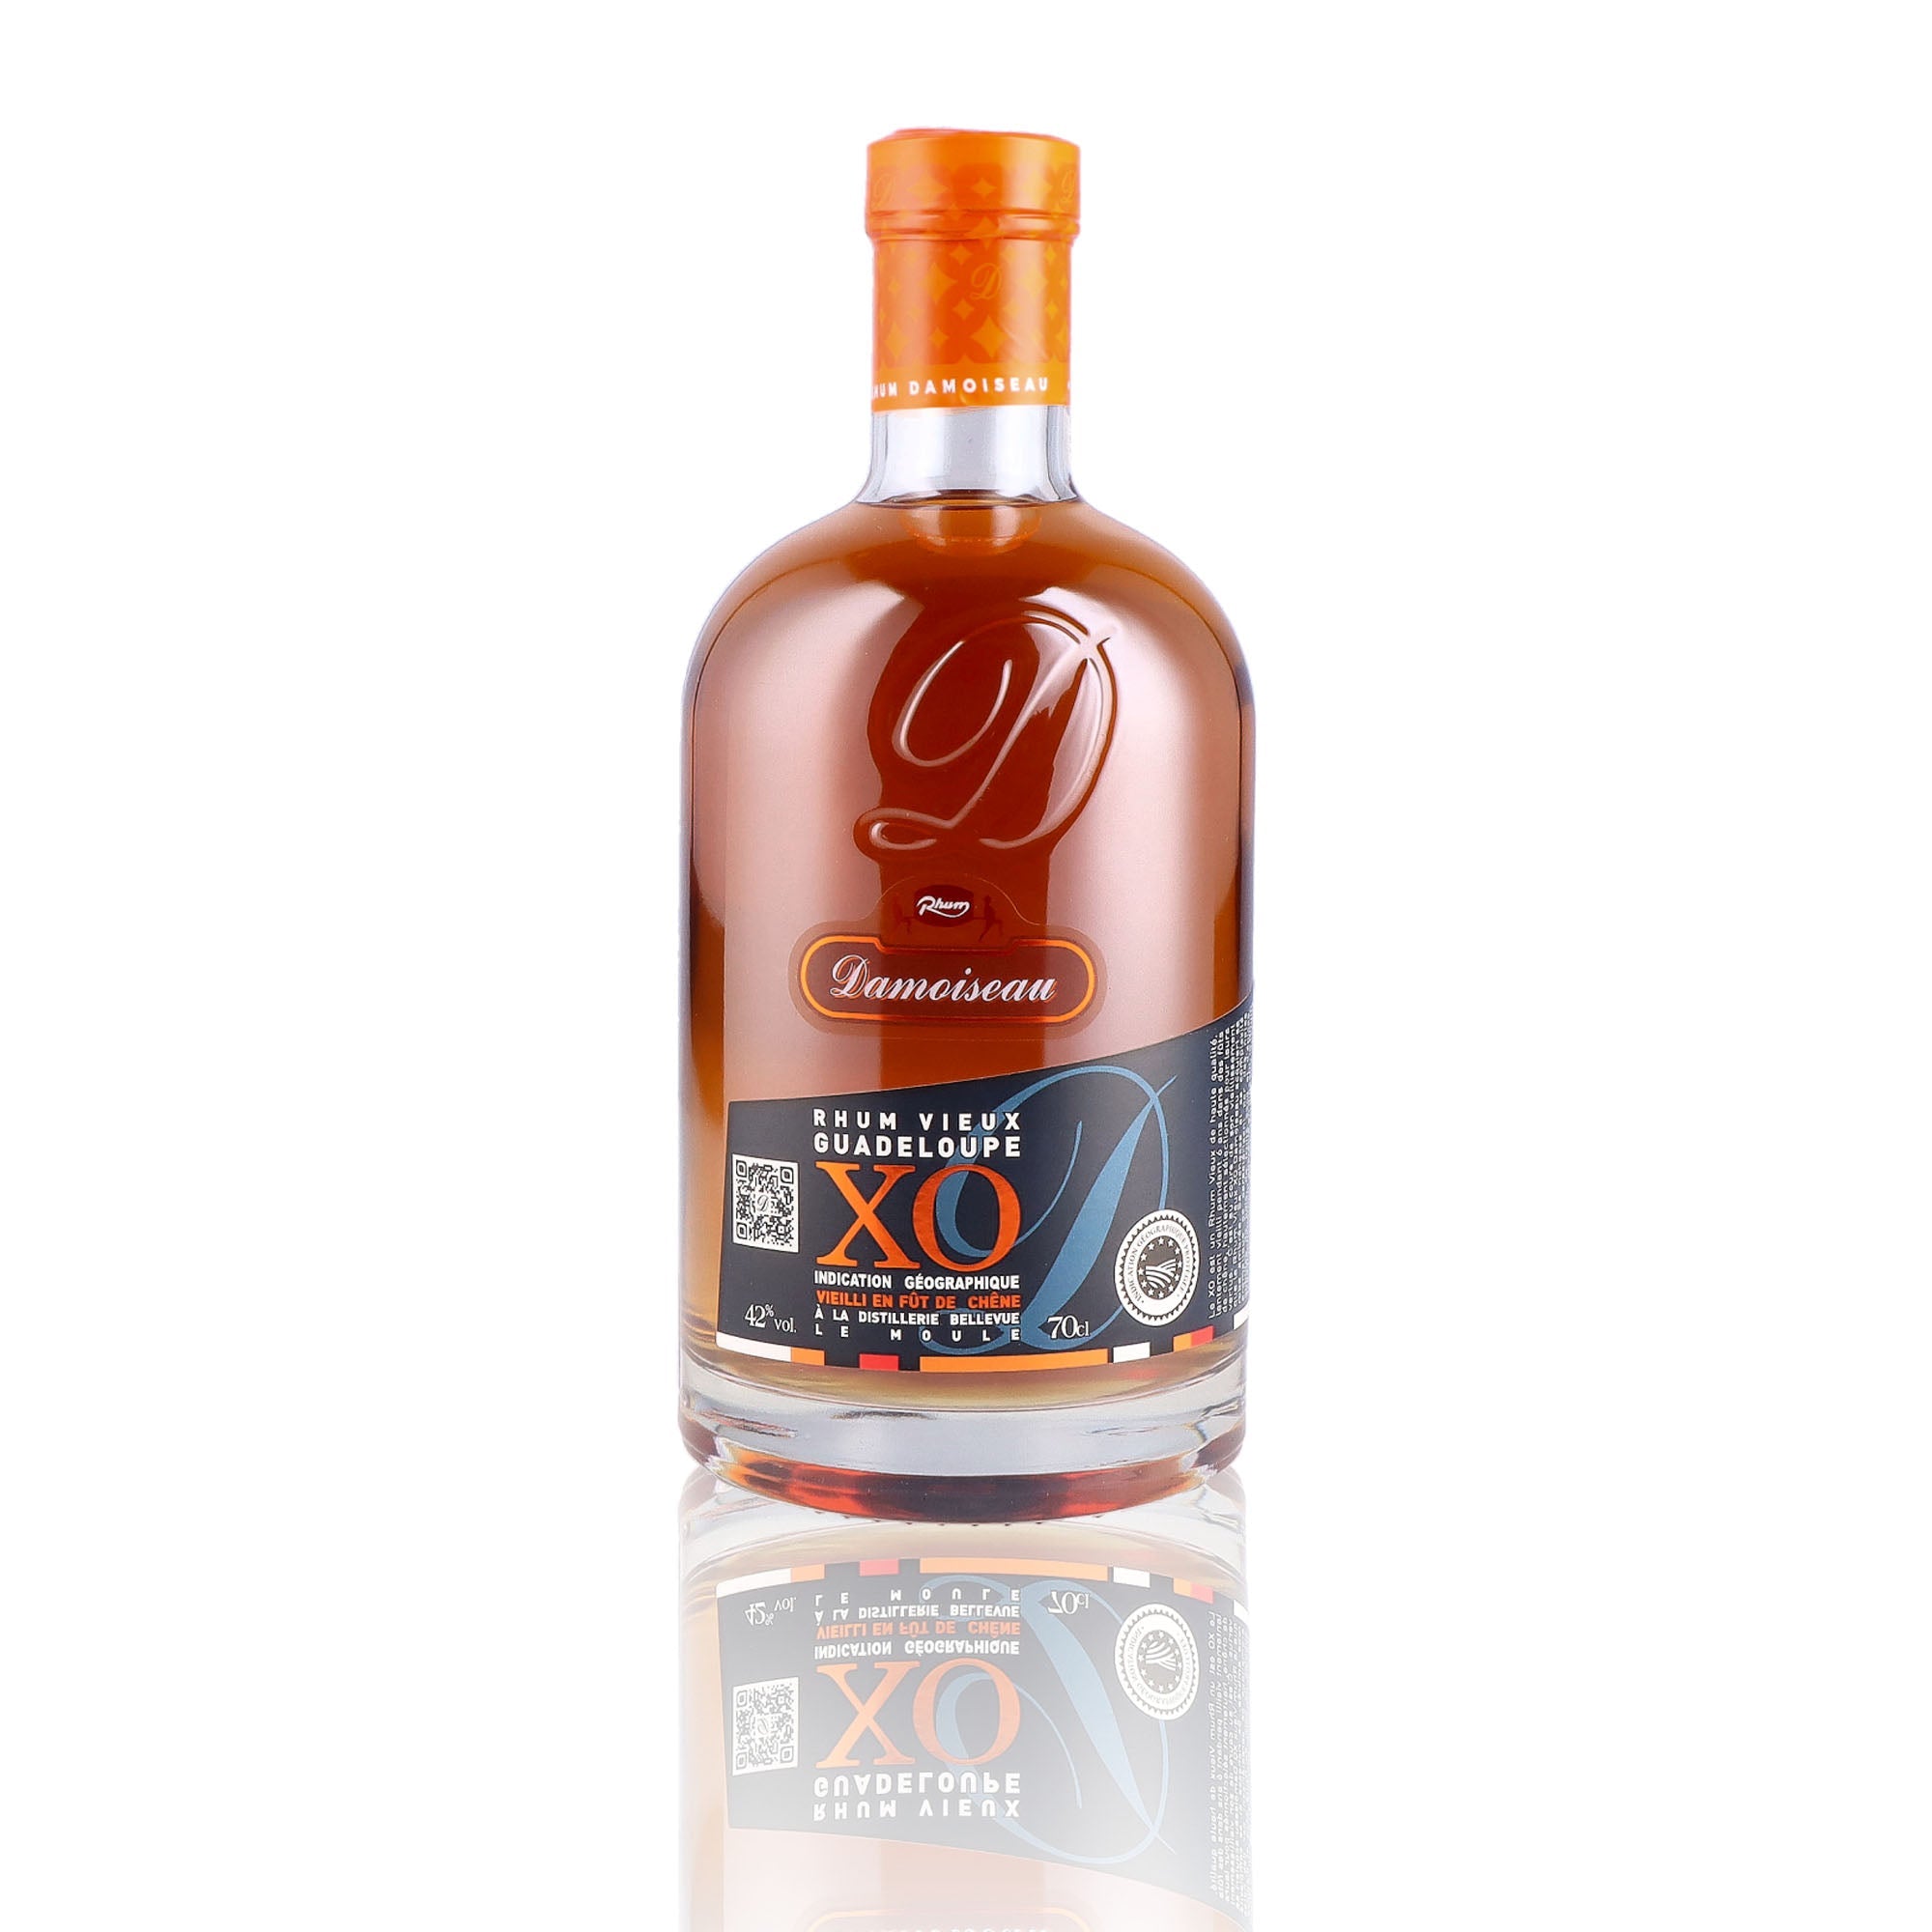 Une bouteille de rhum vieux, de la marque Damoiseau, nommée XO.